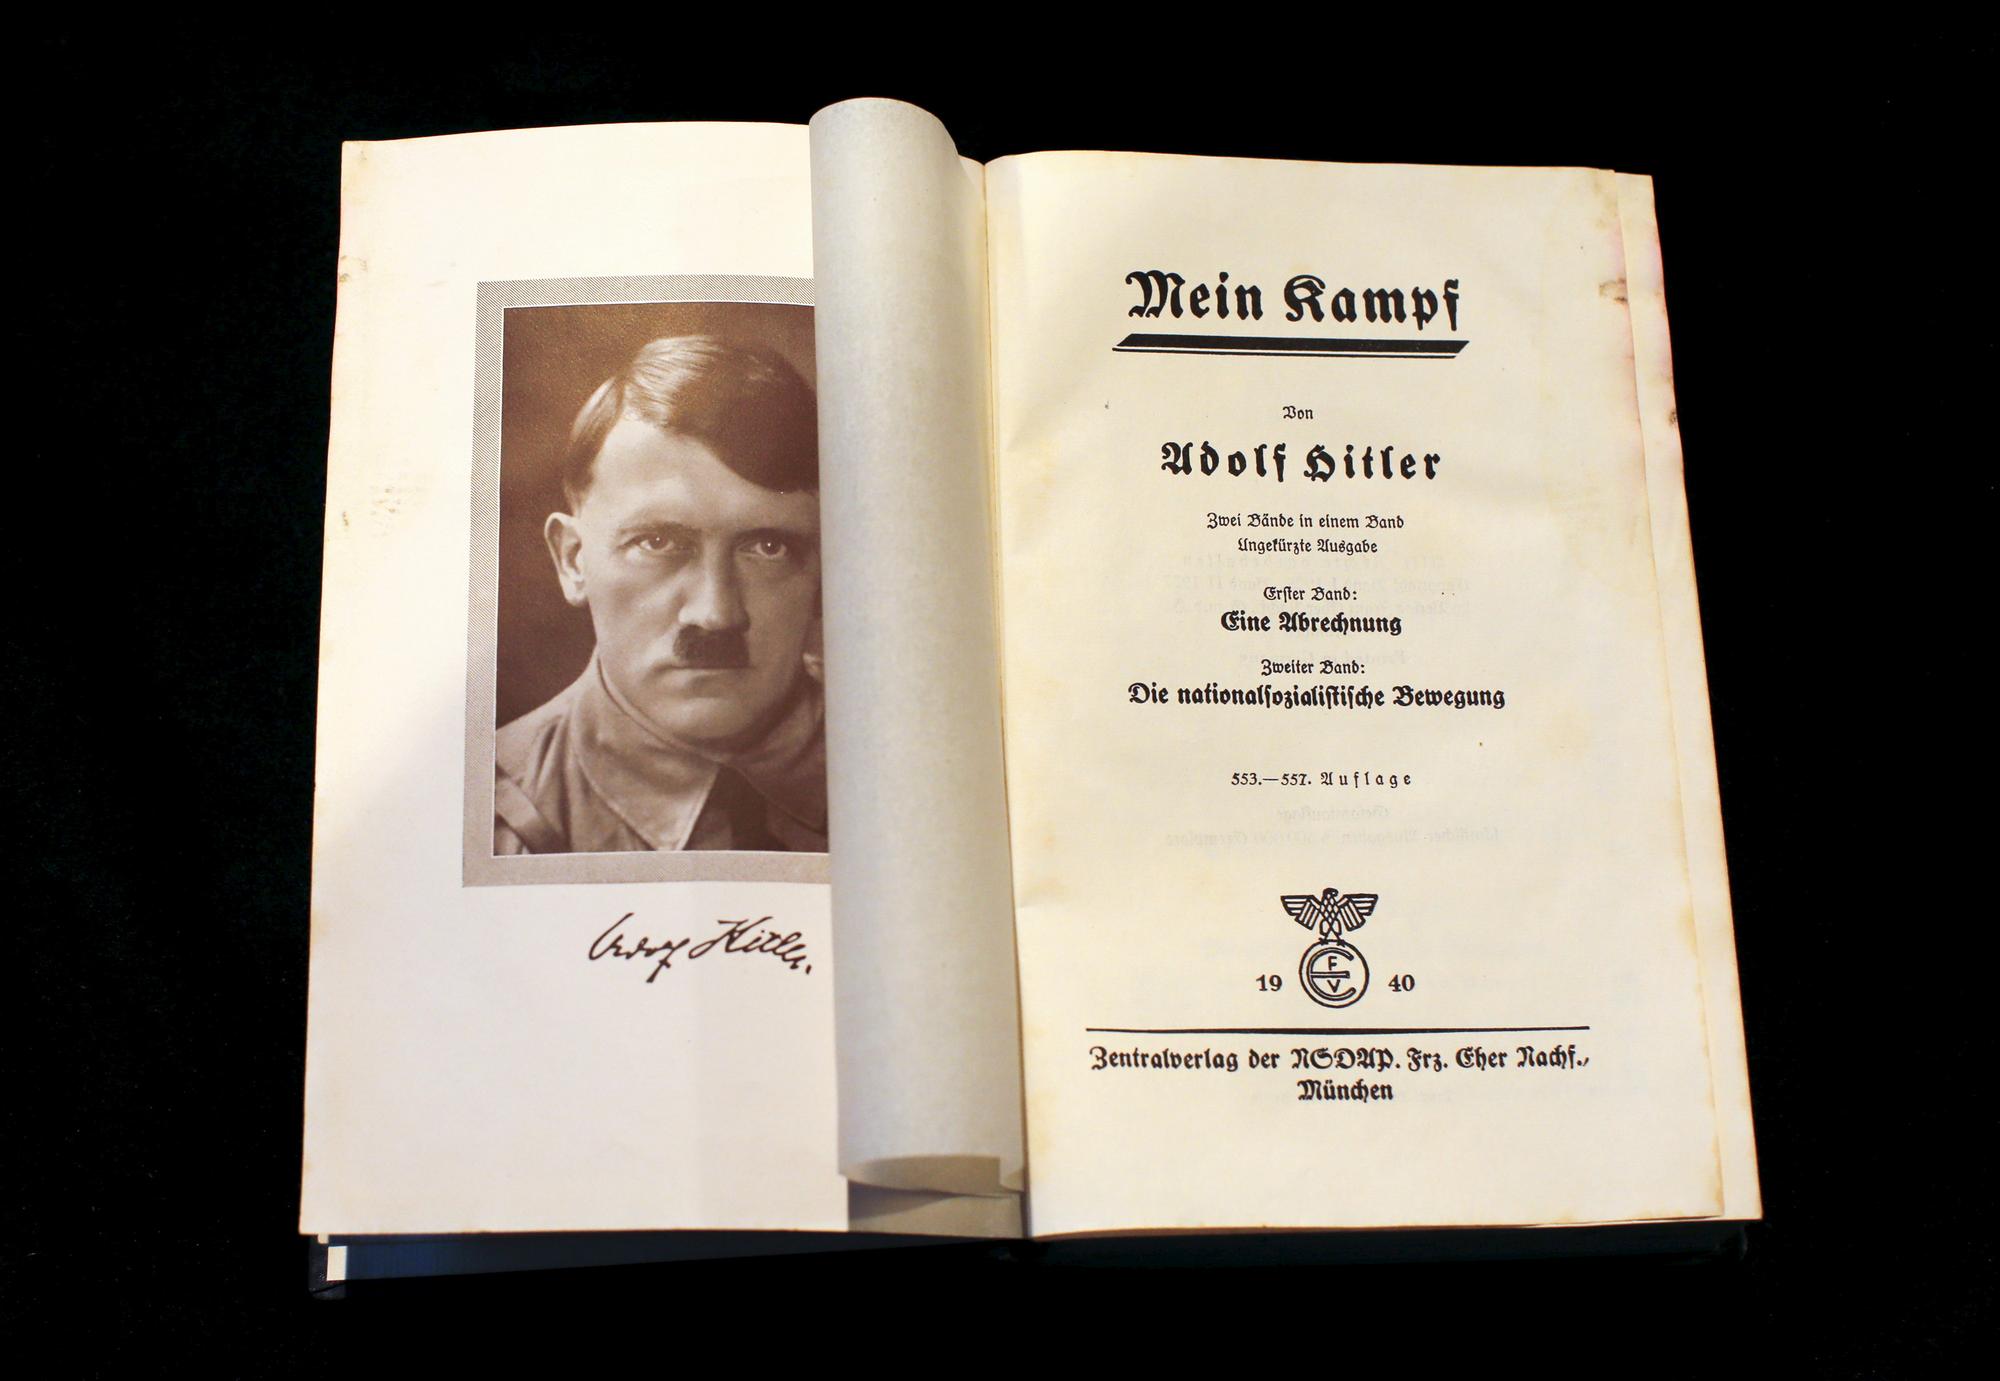 Un exemplaire du livre "Mein Kampf" d'Adolf Hitler photographié à Berlin le 16 décembre 2015. [Reuters - Fabrizio Bensch]